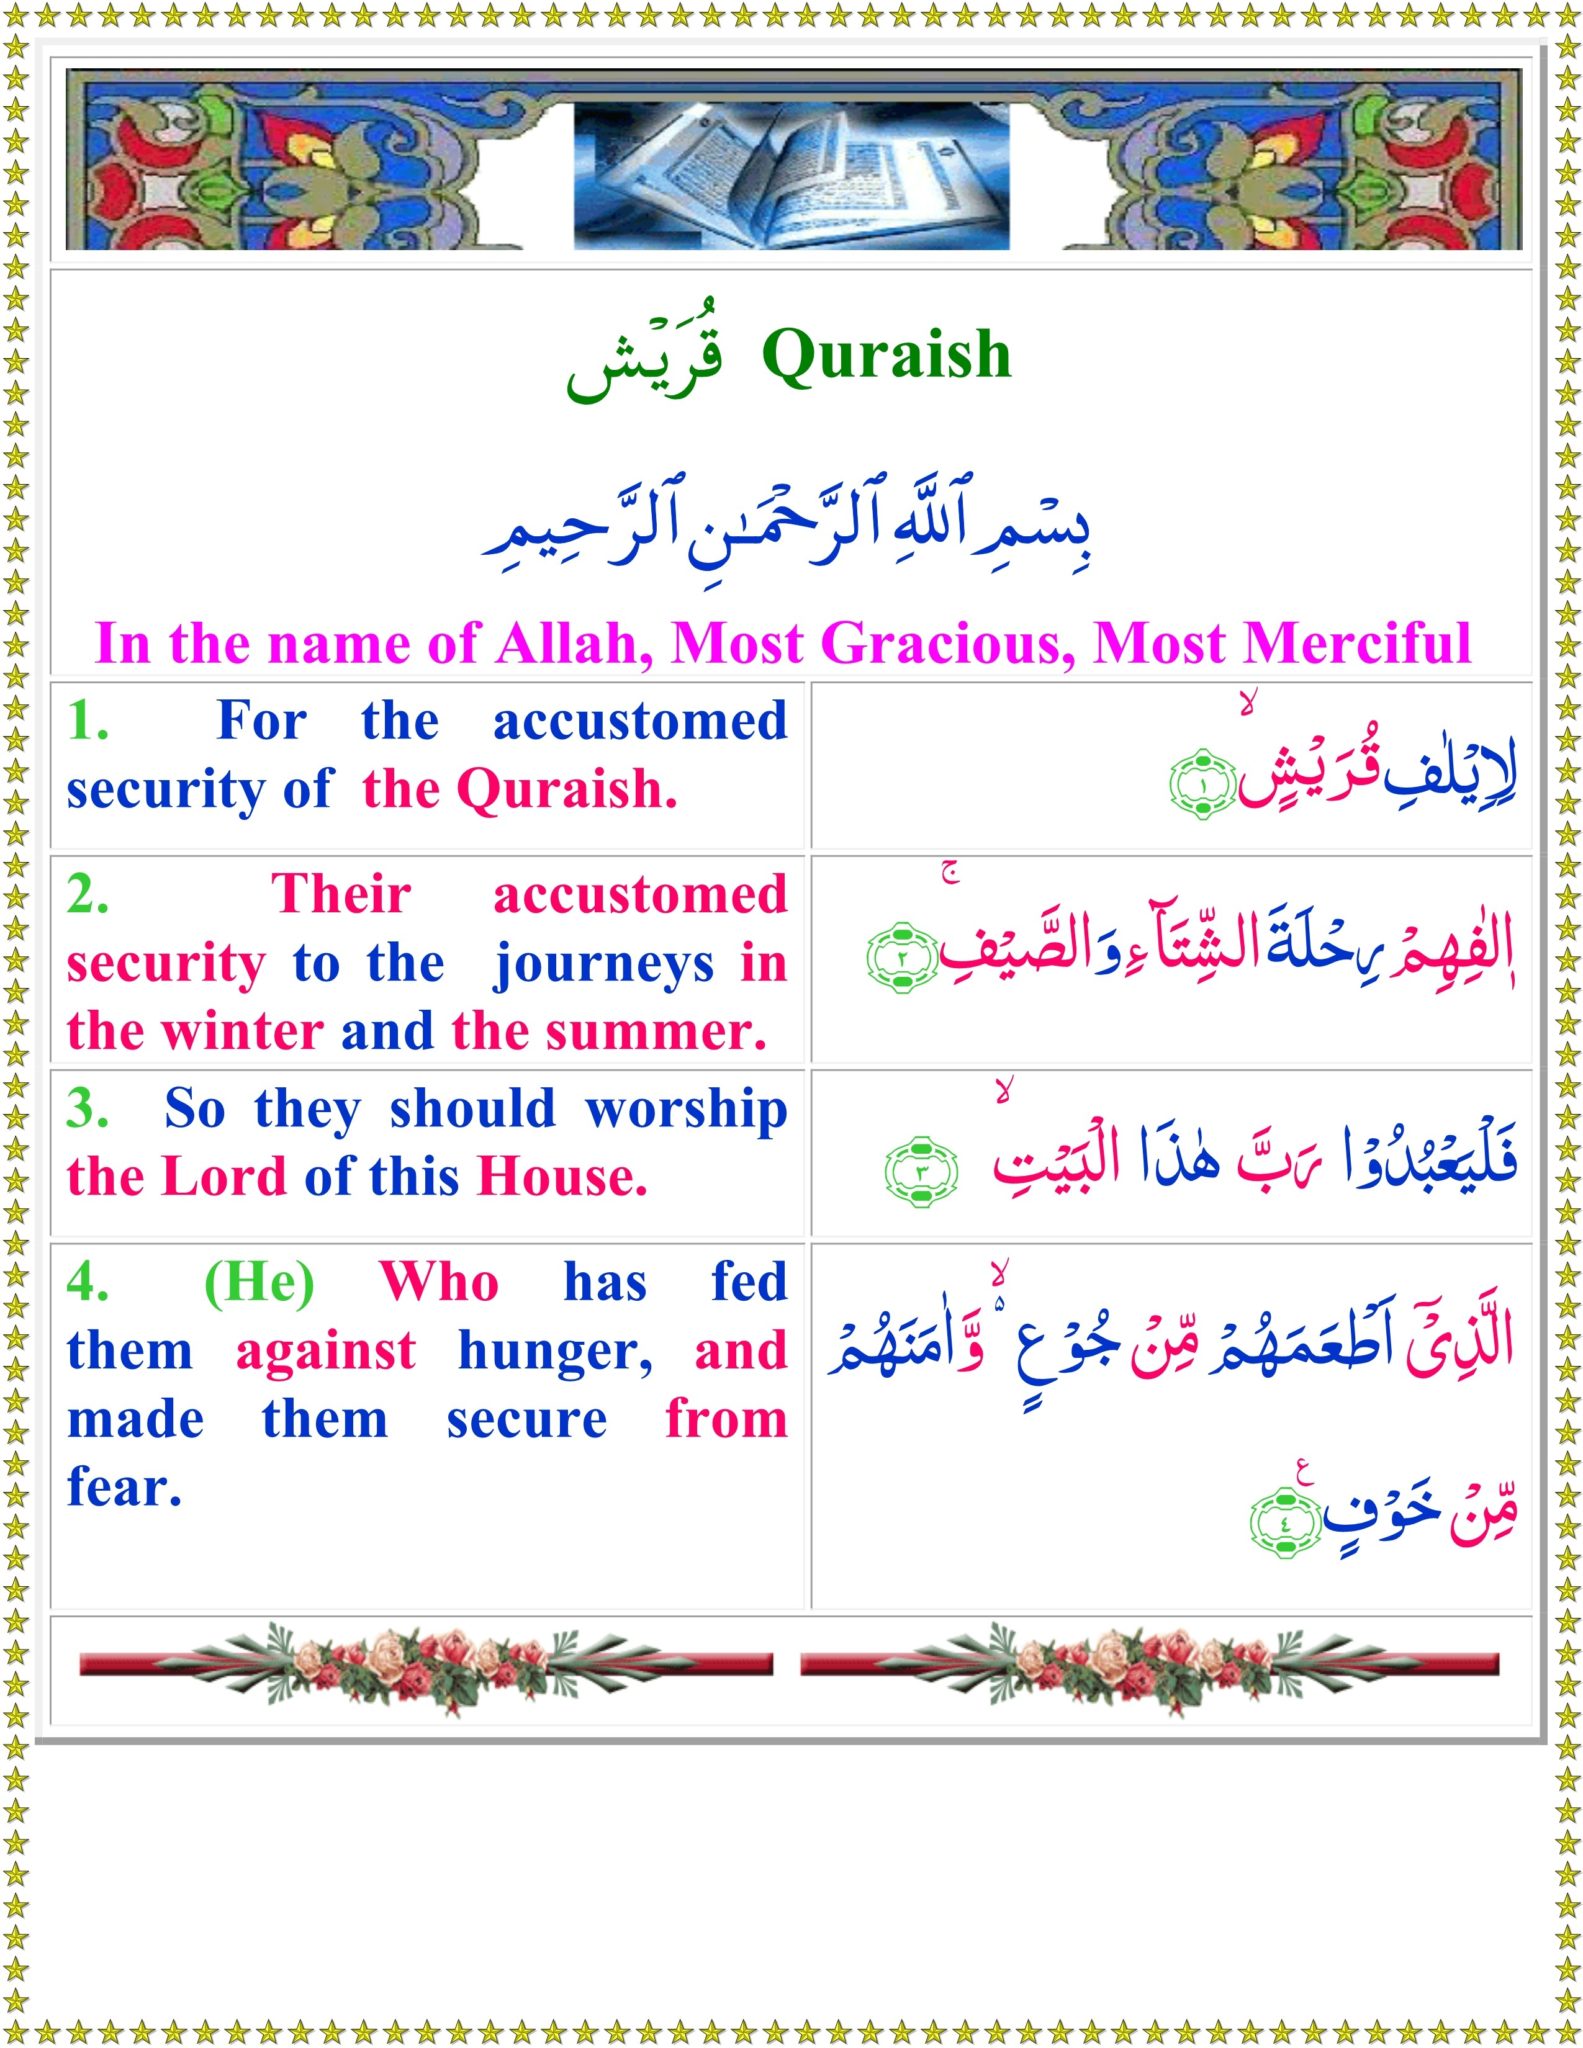 Surah Quraish translation in English